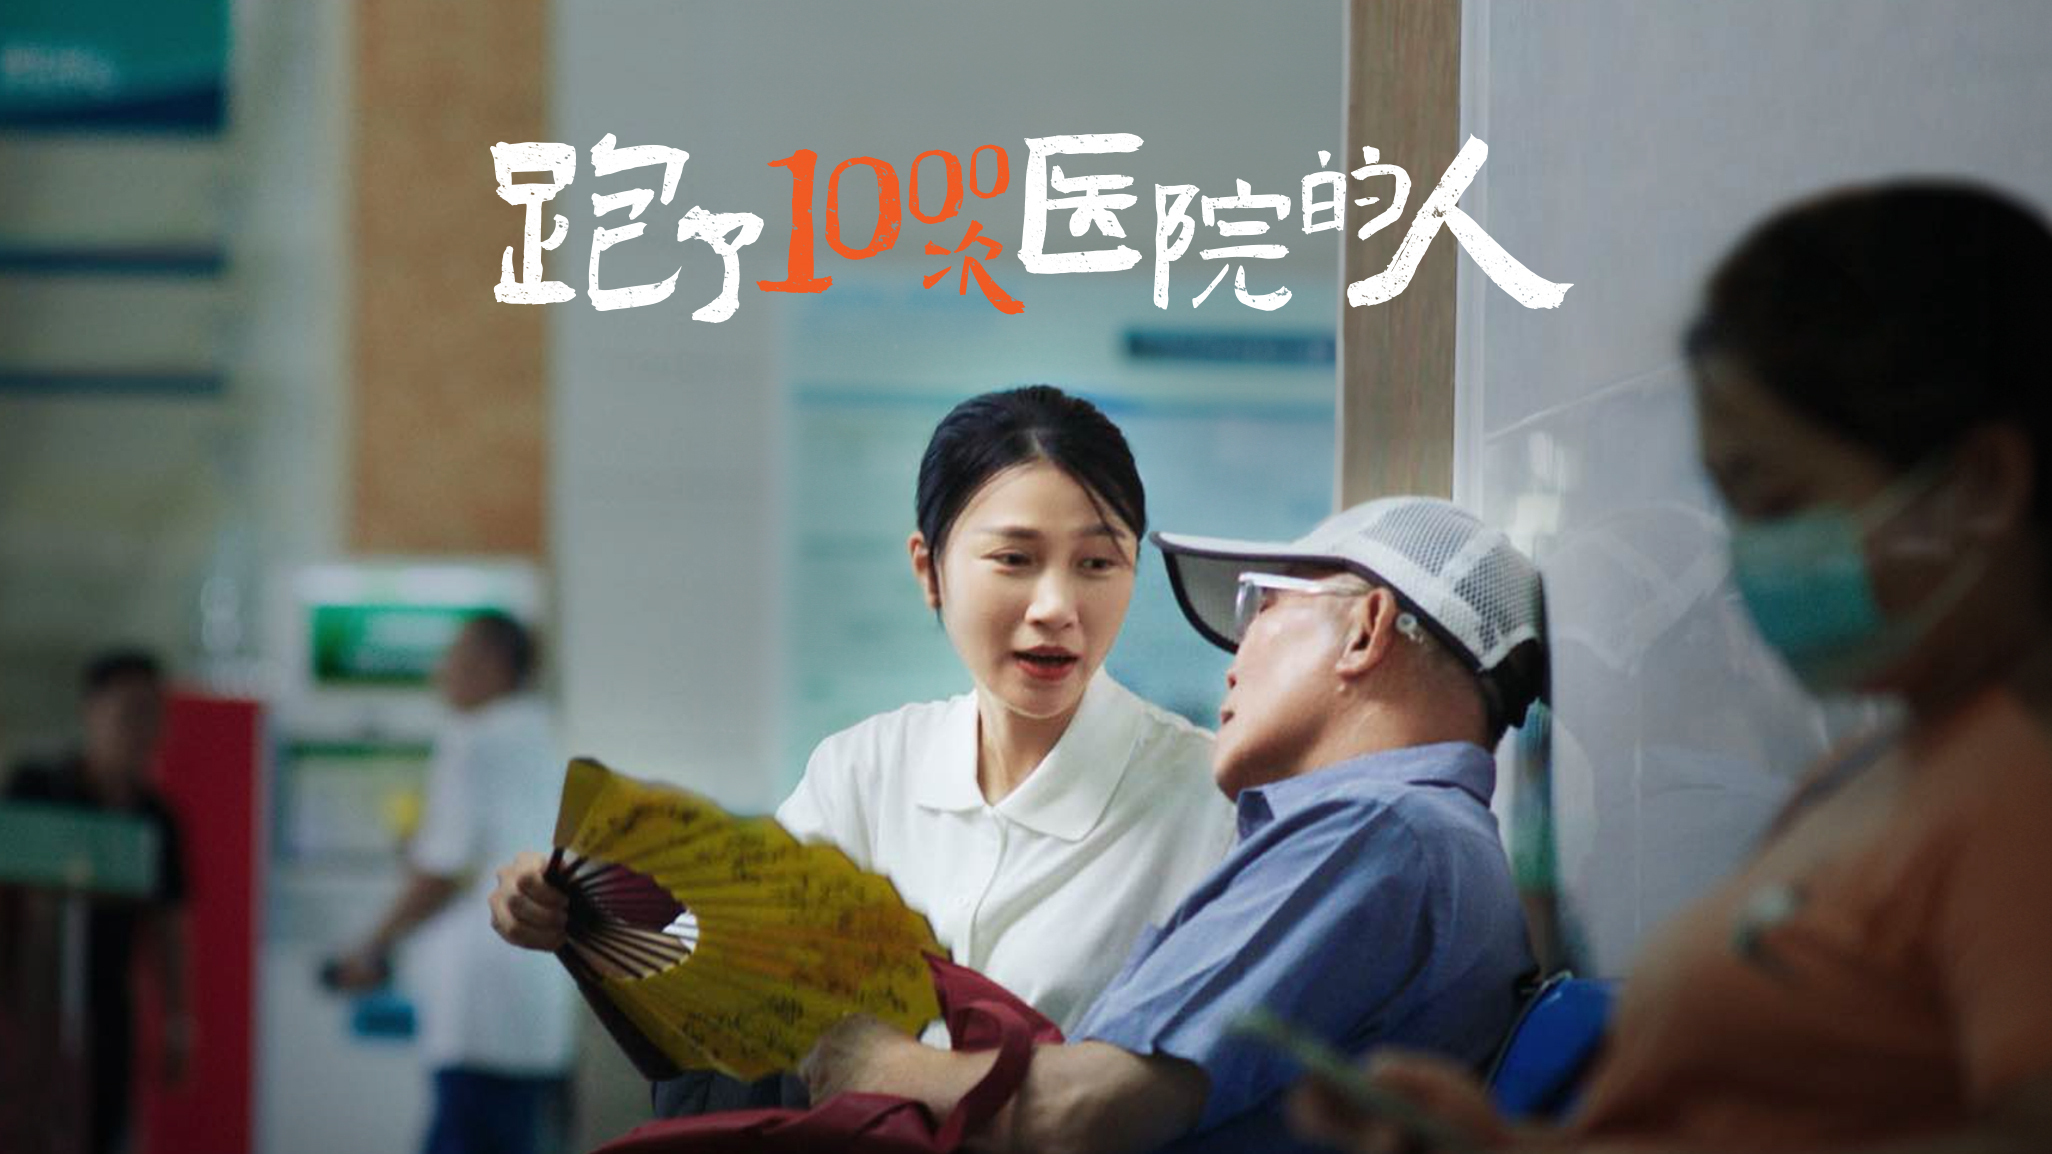 平安乐健康品牌上市系列影片「陪诊篇」《跑了1000次医院的人